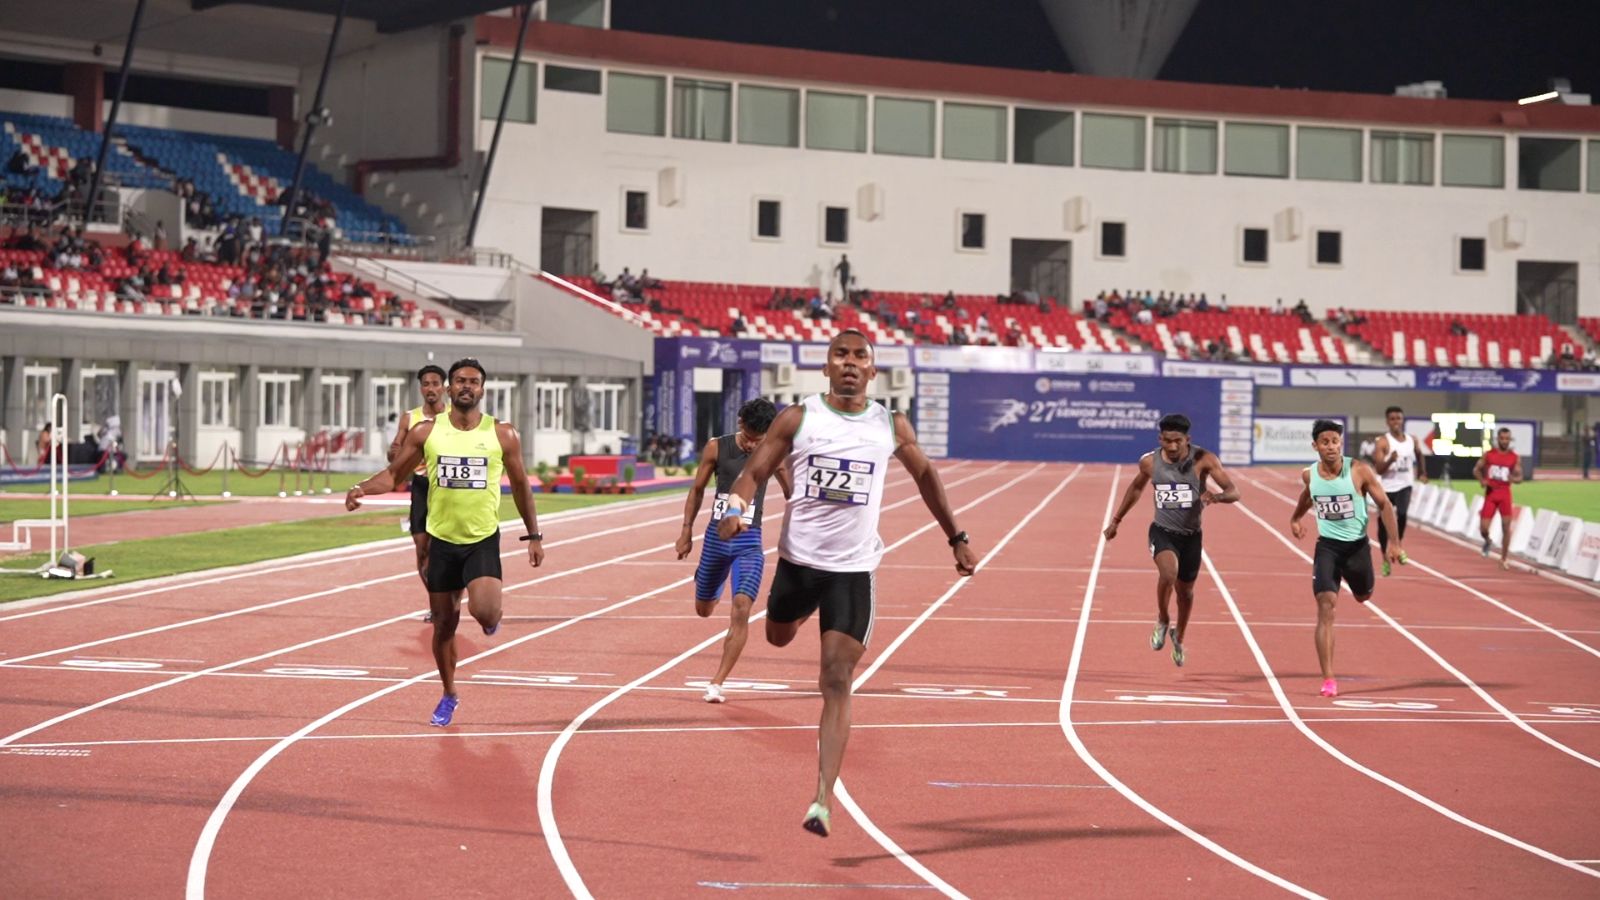 Animesh Kujur, nowy dzieciak na blokach startowych, chcący bić rekordy w sprintach |  Wiadomości sportowe-inne